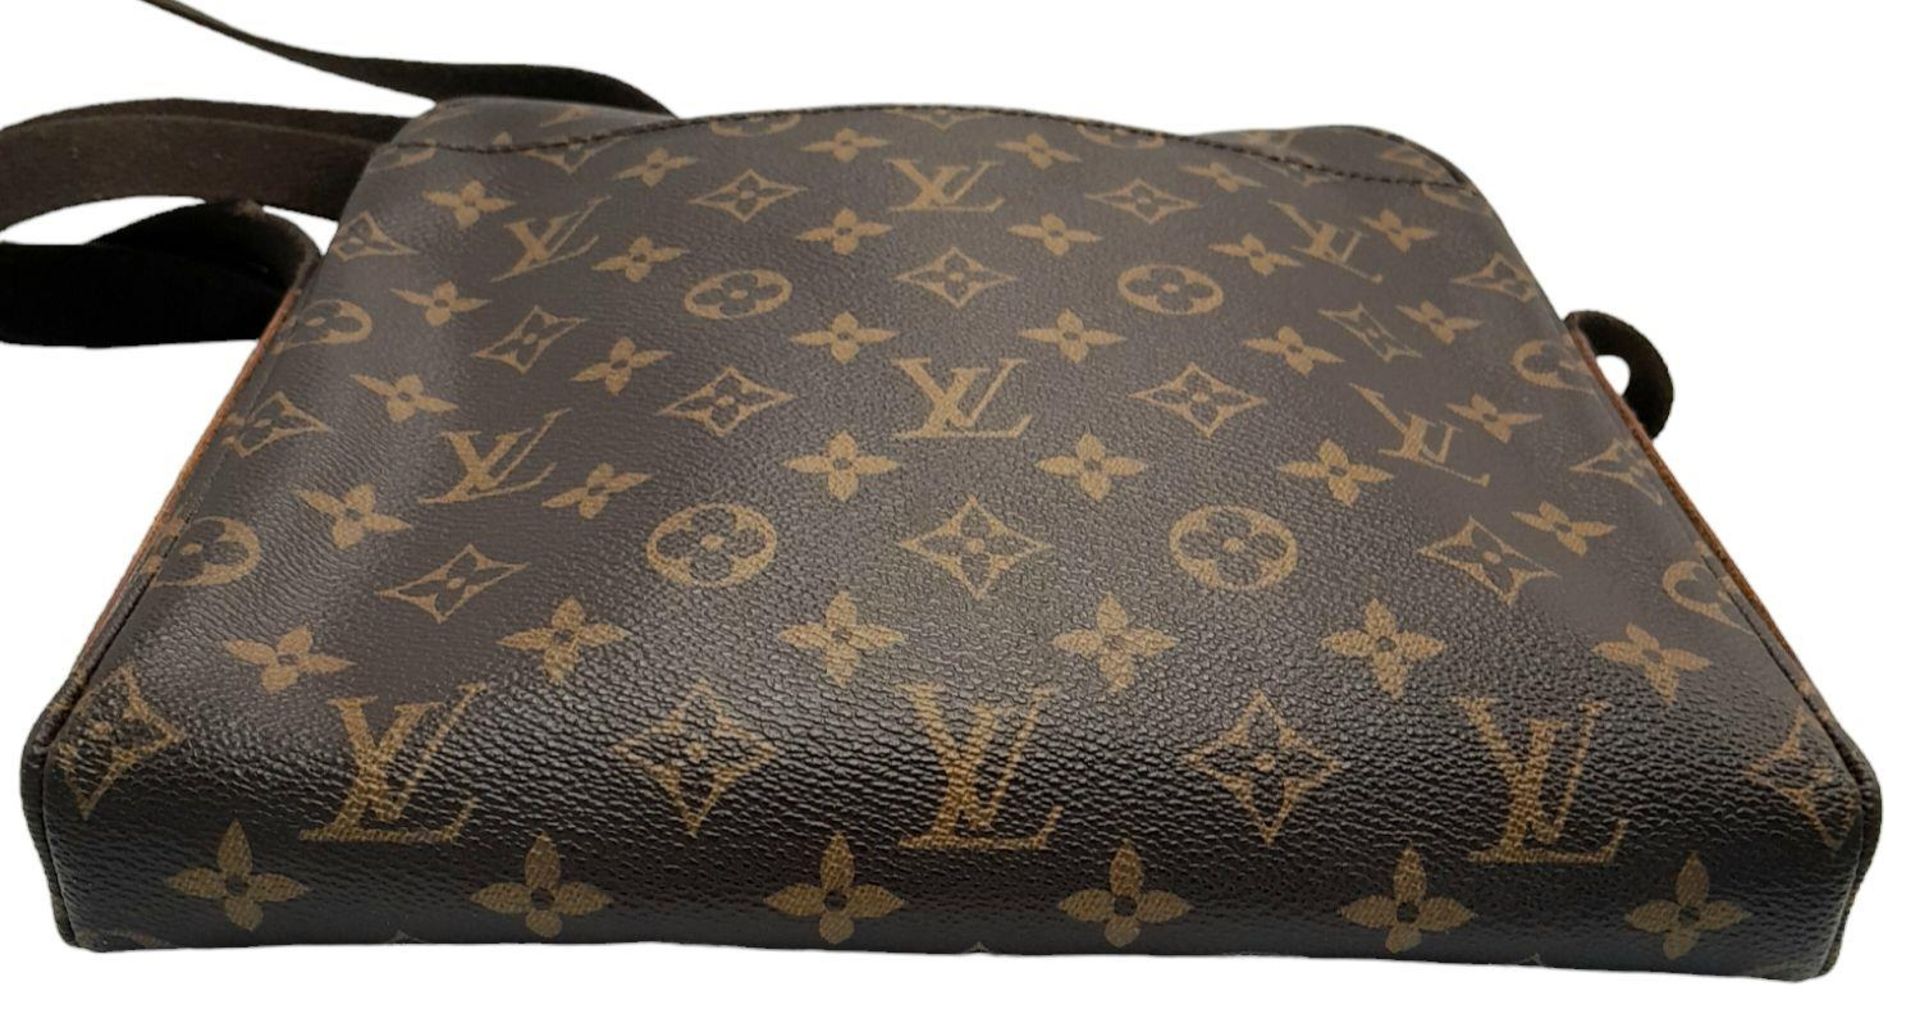 A Louis Vuitton Trotteur Beaubourg Satchel Bag. Monogramed canvas exterior with gold-toned hardware, - Bild 5 aus 9